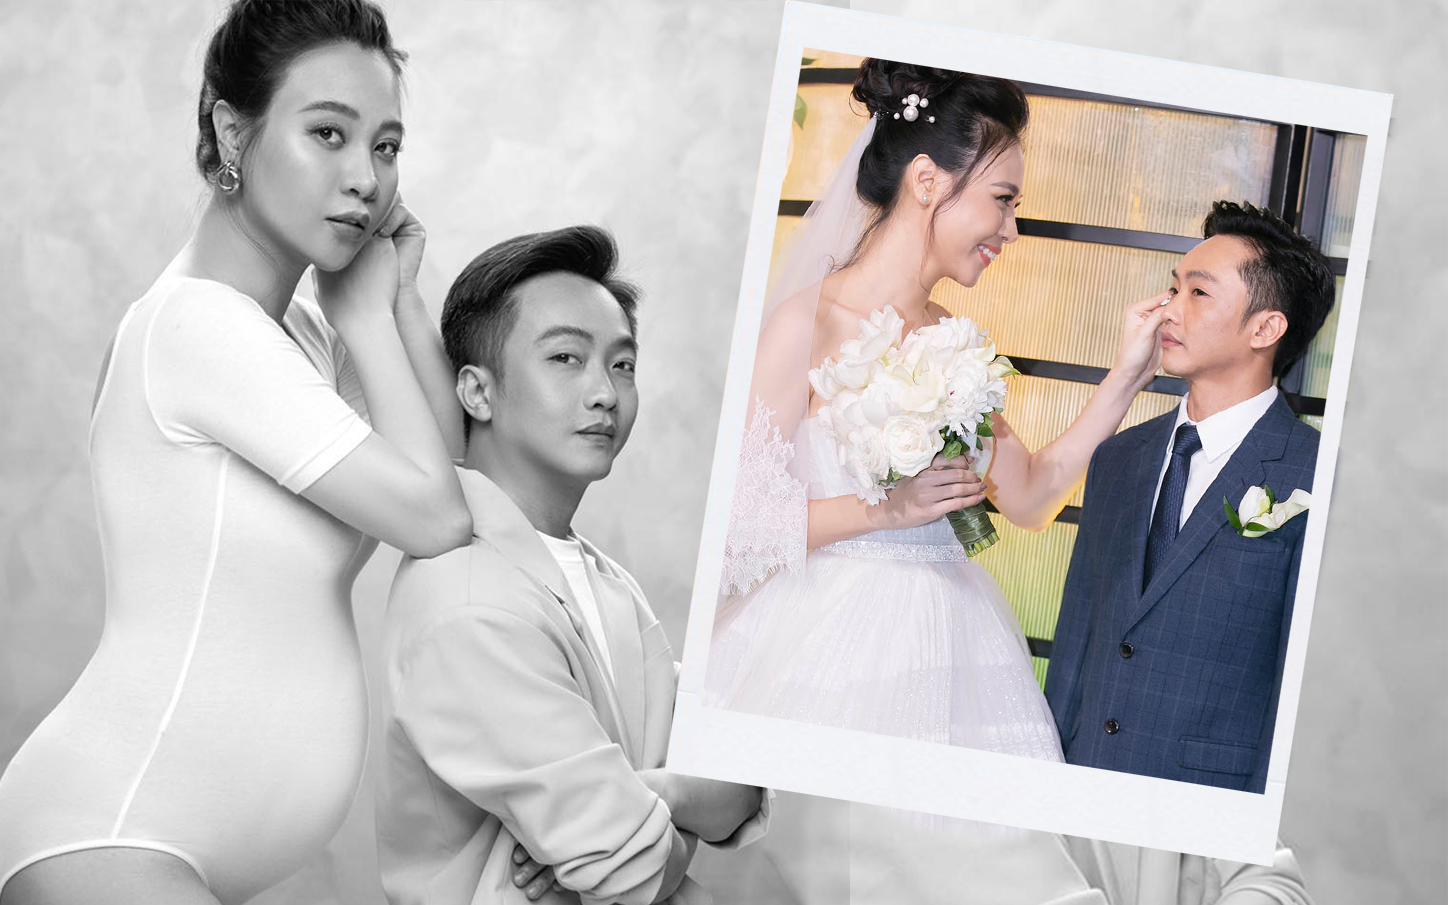 HOT: Đàm Thu Trang khoe bụng bầu to, chính thức xác nhận có con đầu lòng với Cường Đô La sau 1 năm về chung nhà!